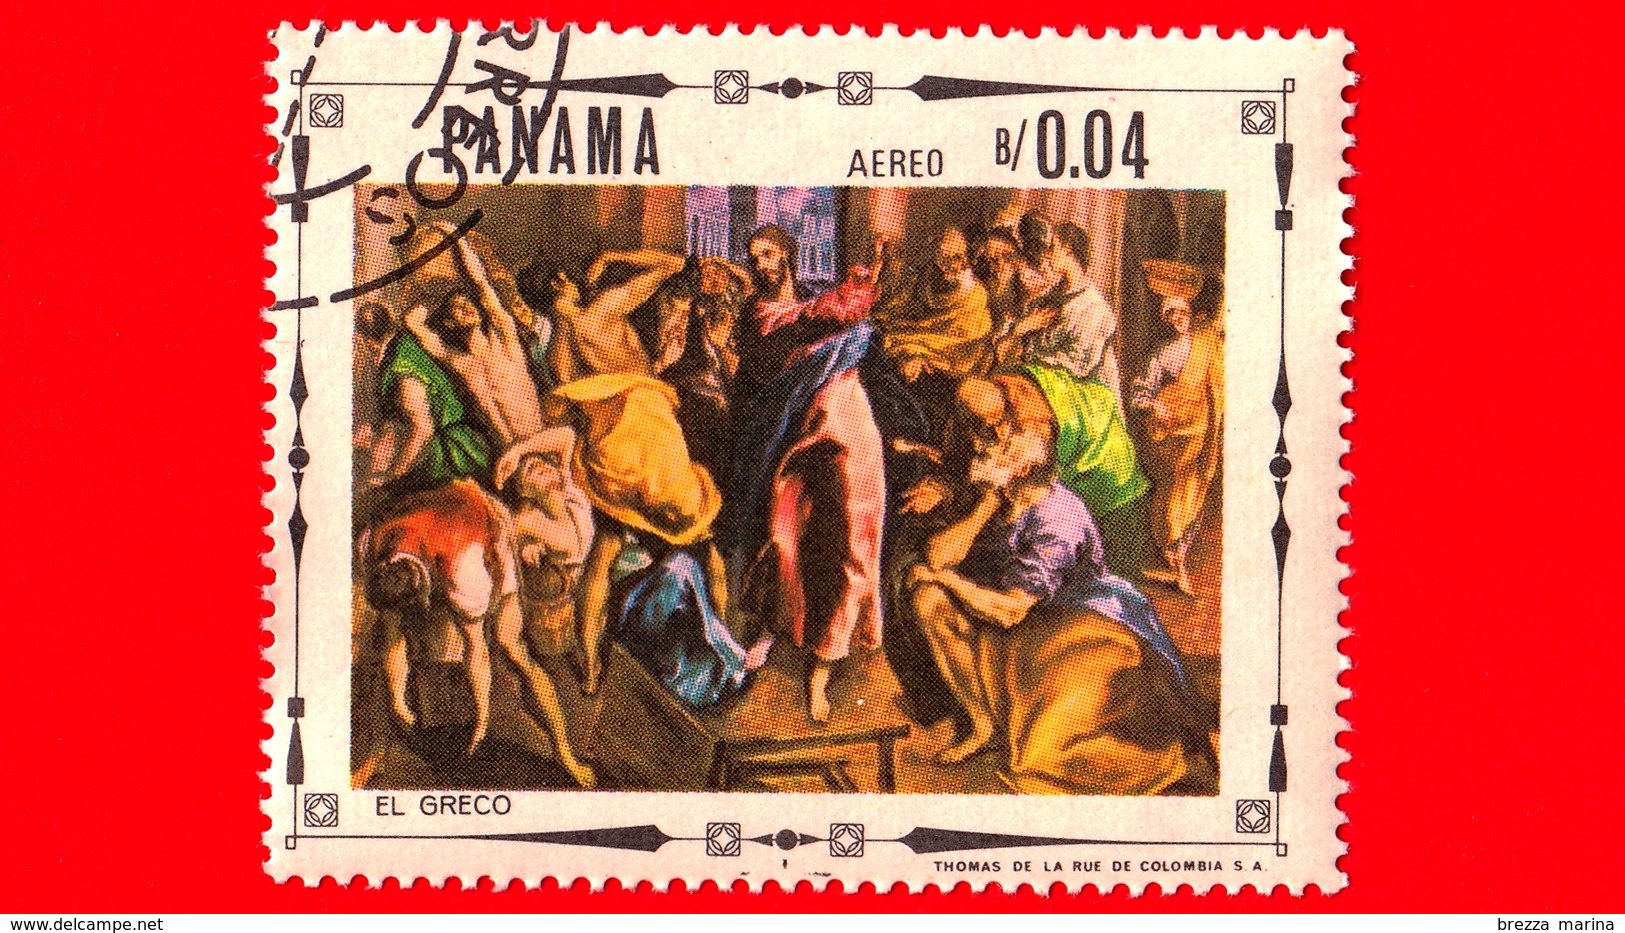 PANAMA - Nuovo - 1968 - Vita Di Cristo - Cristo E I Cambiavalute Nel Tempio, Dipinto Di El Greco - 0.04 P. Aerea - Panama